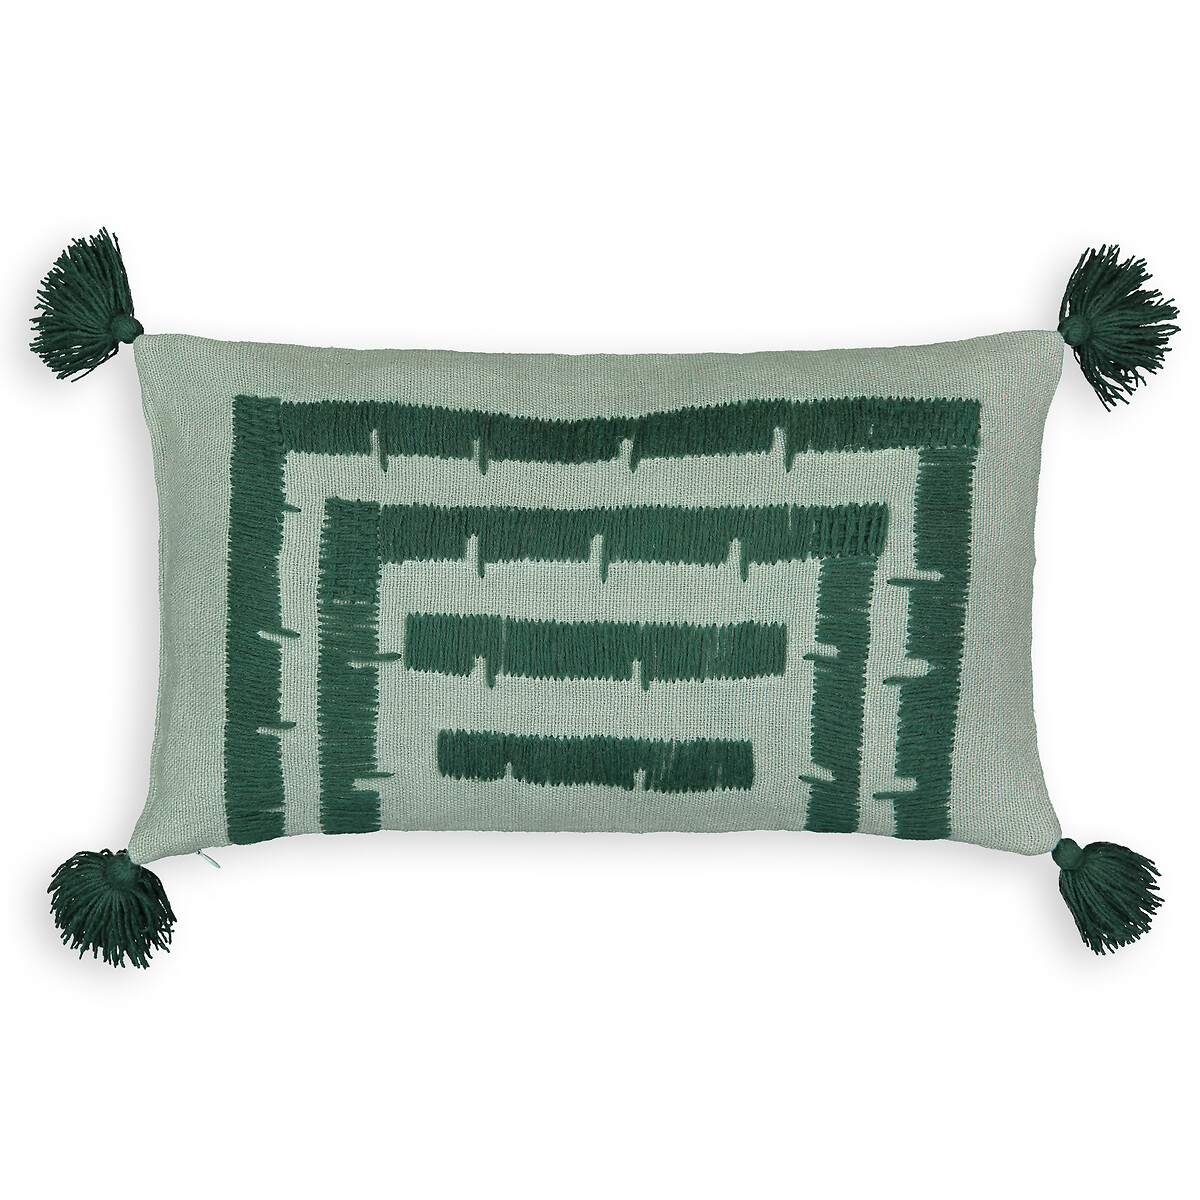 Чехол AM.PM На подушку из льна и хлопка Riscaya 50 x 30 см зеленый, размер 50 x 30 см